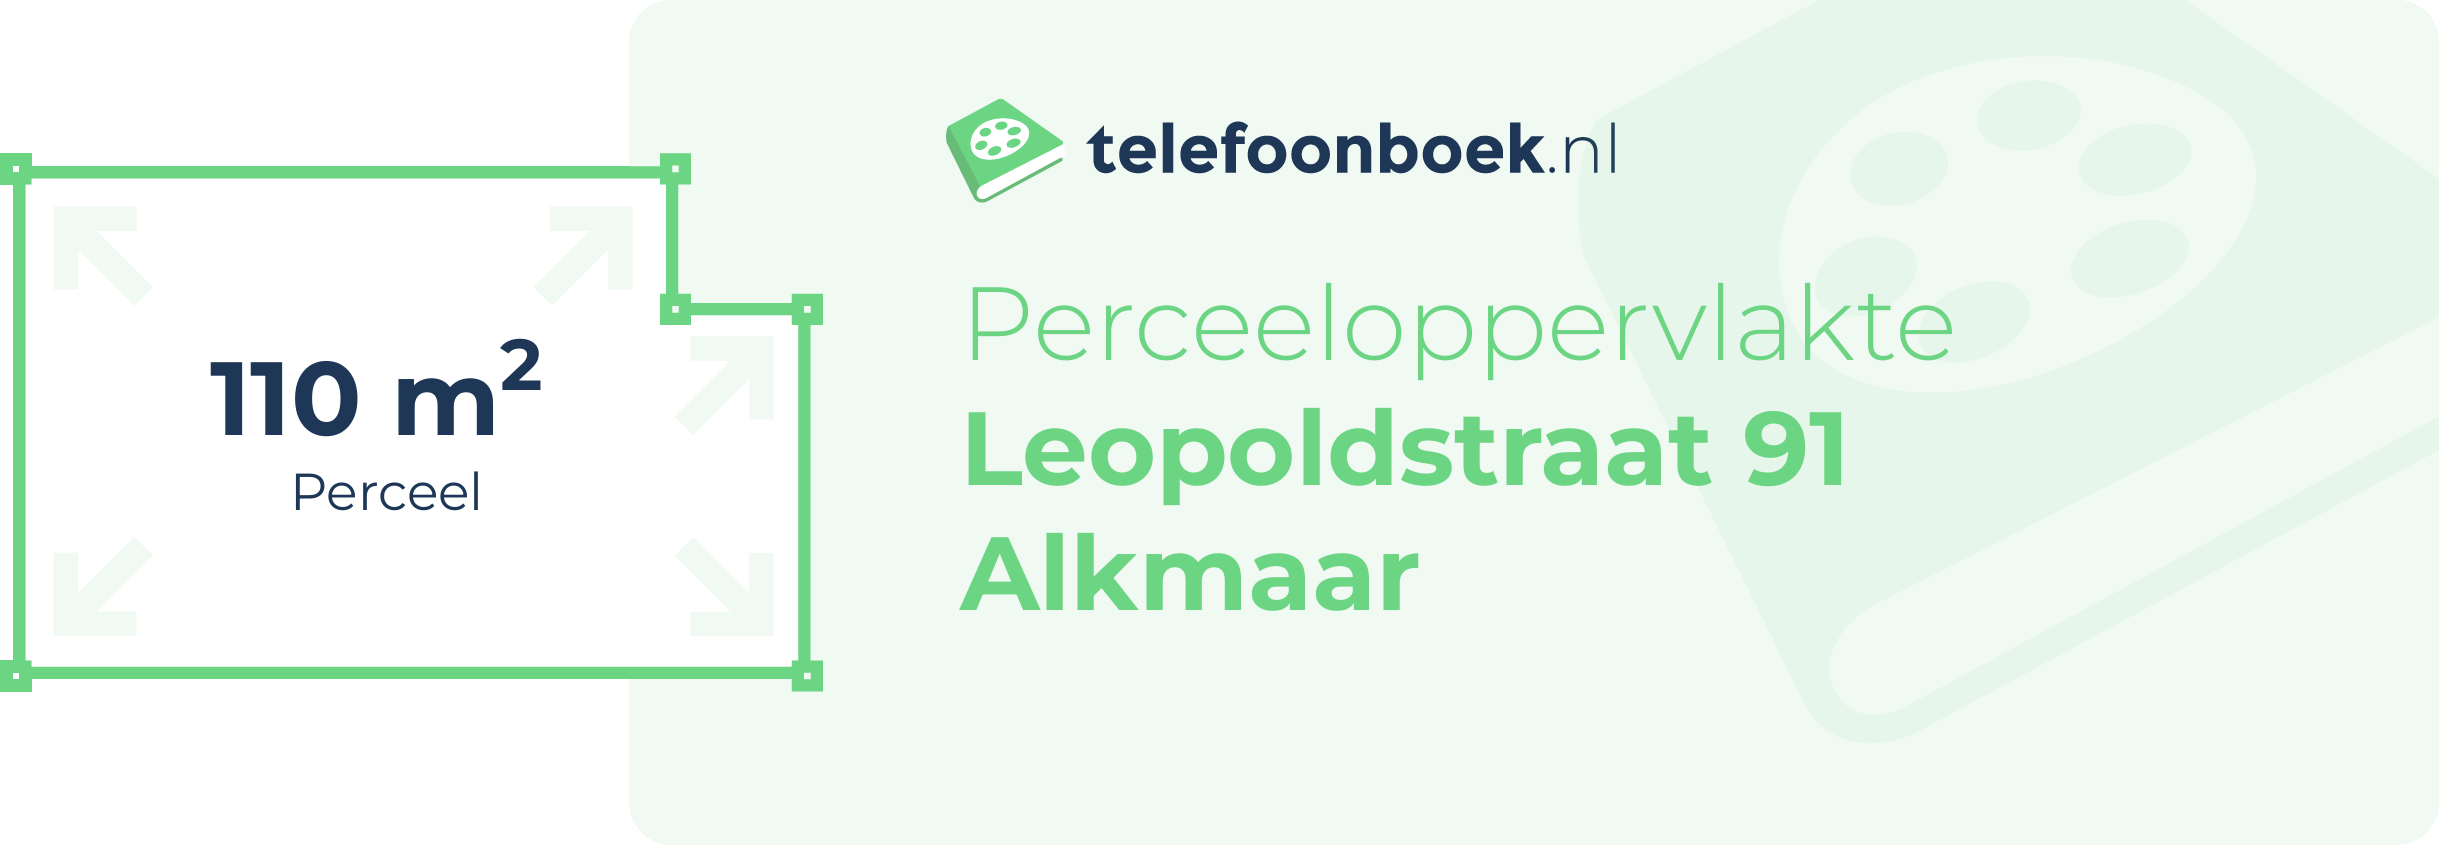 Perceeloppervlakte Leopoldstraat 91 Alkmaar